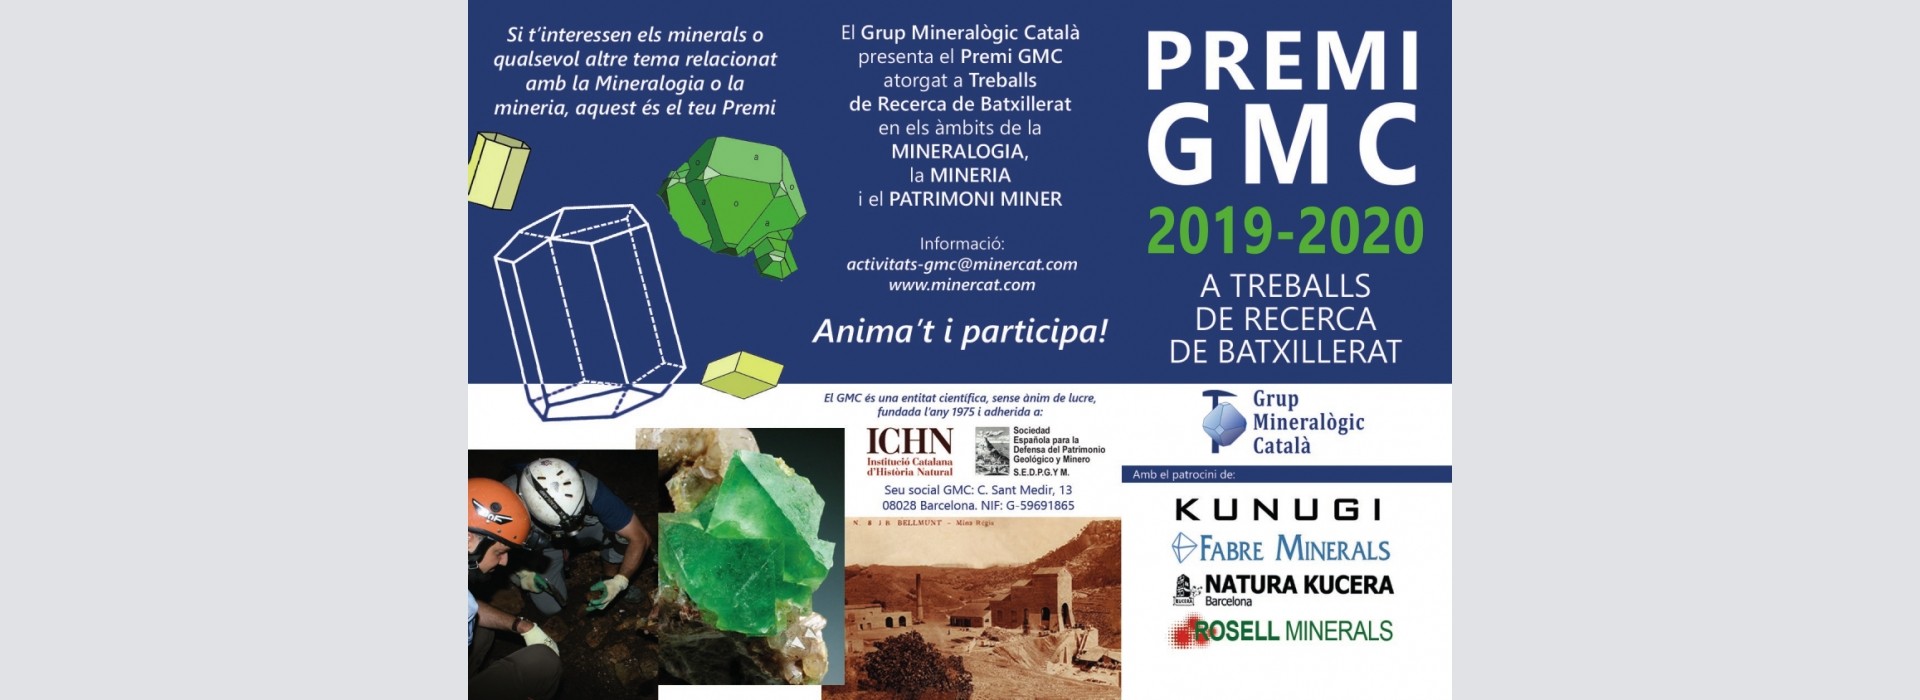 Premio GMC 2019-2020 a trabajos de investigación de bachillerato